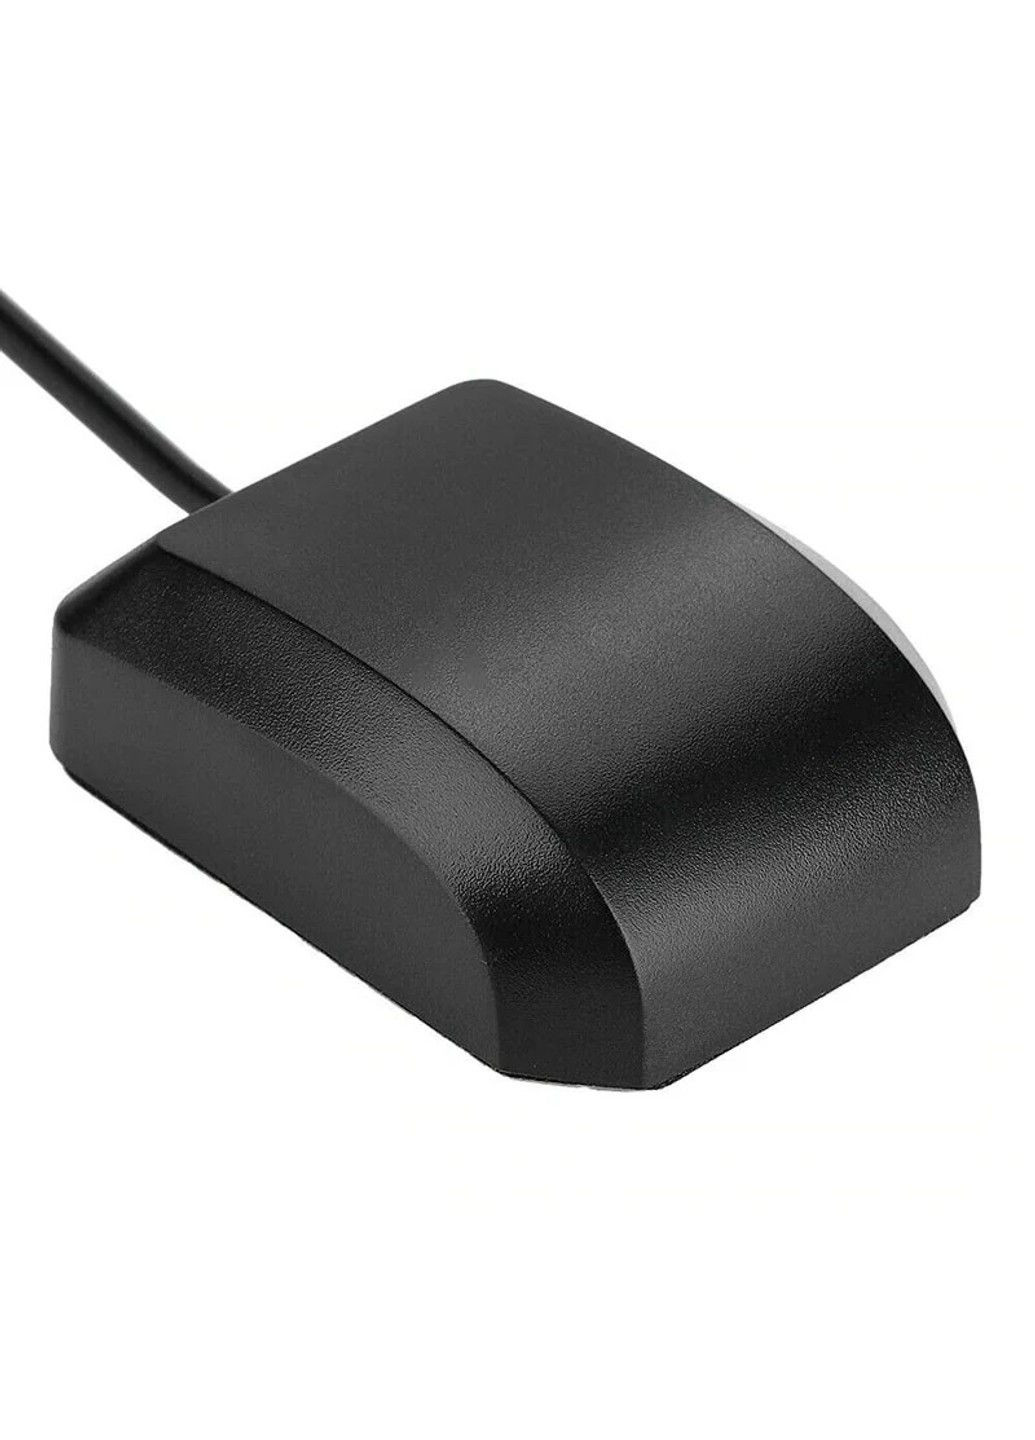 USB GPS приймач для ноутбука, комп'ютера G-MOUSE чіп 8 з виносним кабелем 2м та магнітним кріпленням U-blox (293061843)